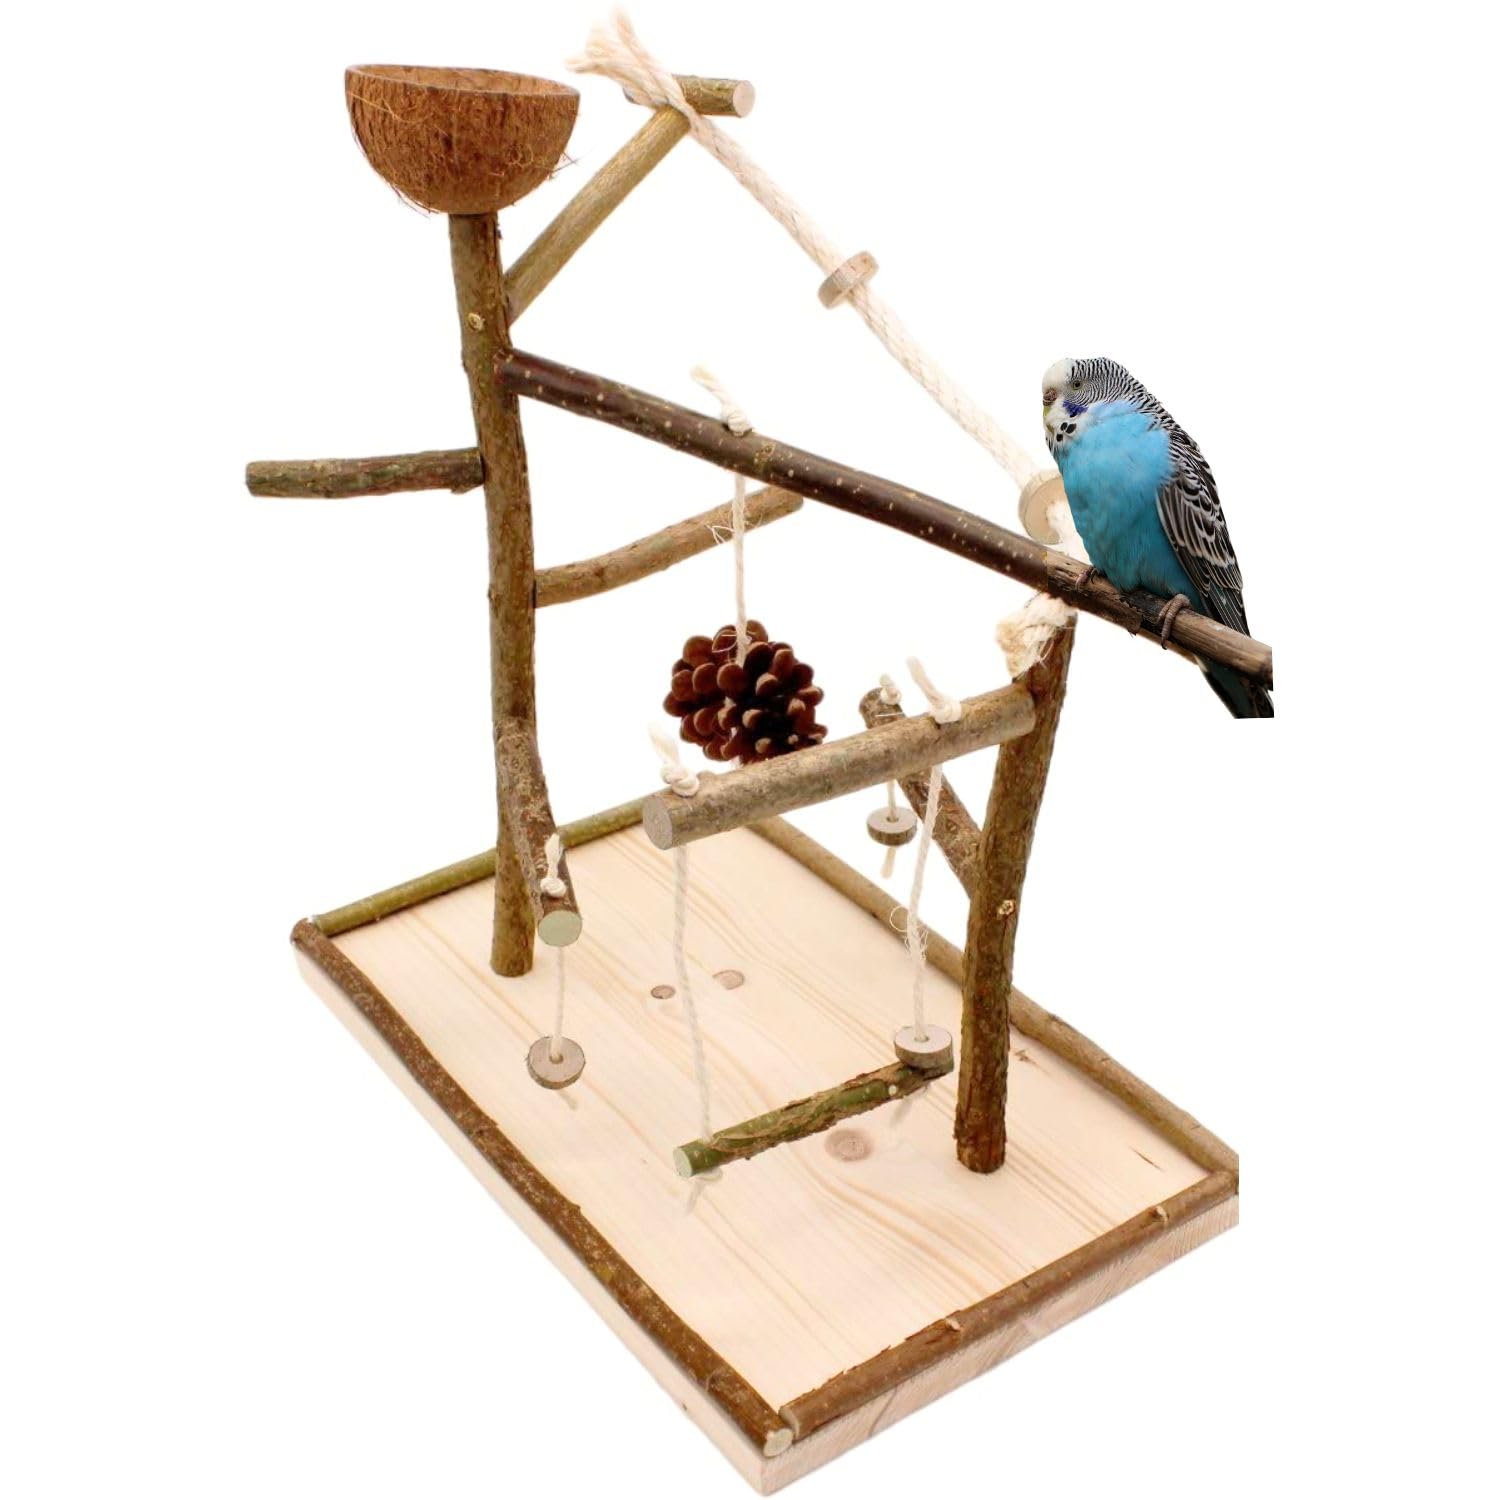 Vogelgaleria Luxus Vogelspielplatz aus Natur Holz mit Abnehmbarer Futterschale | Ideales Spielzeug bei Freiflug für Wellensittich Nymphensittich | Vogelspielzeug